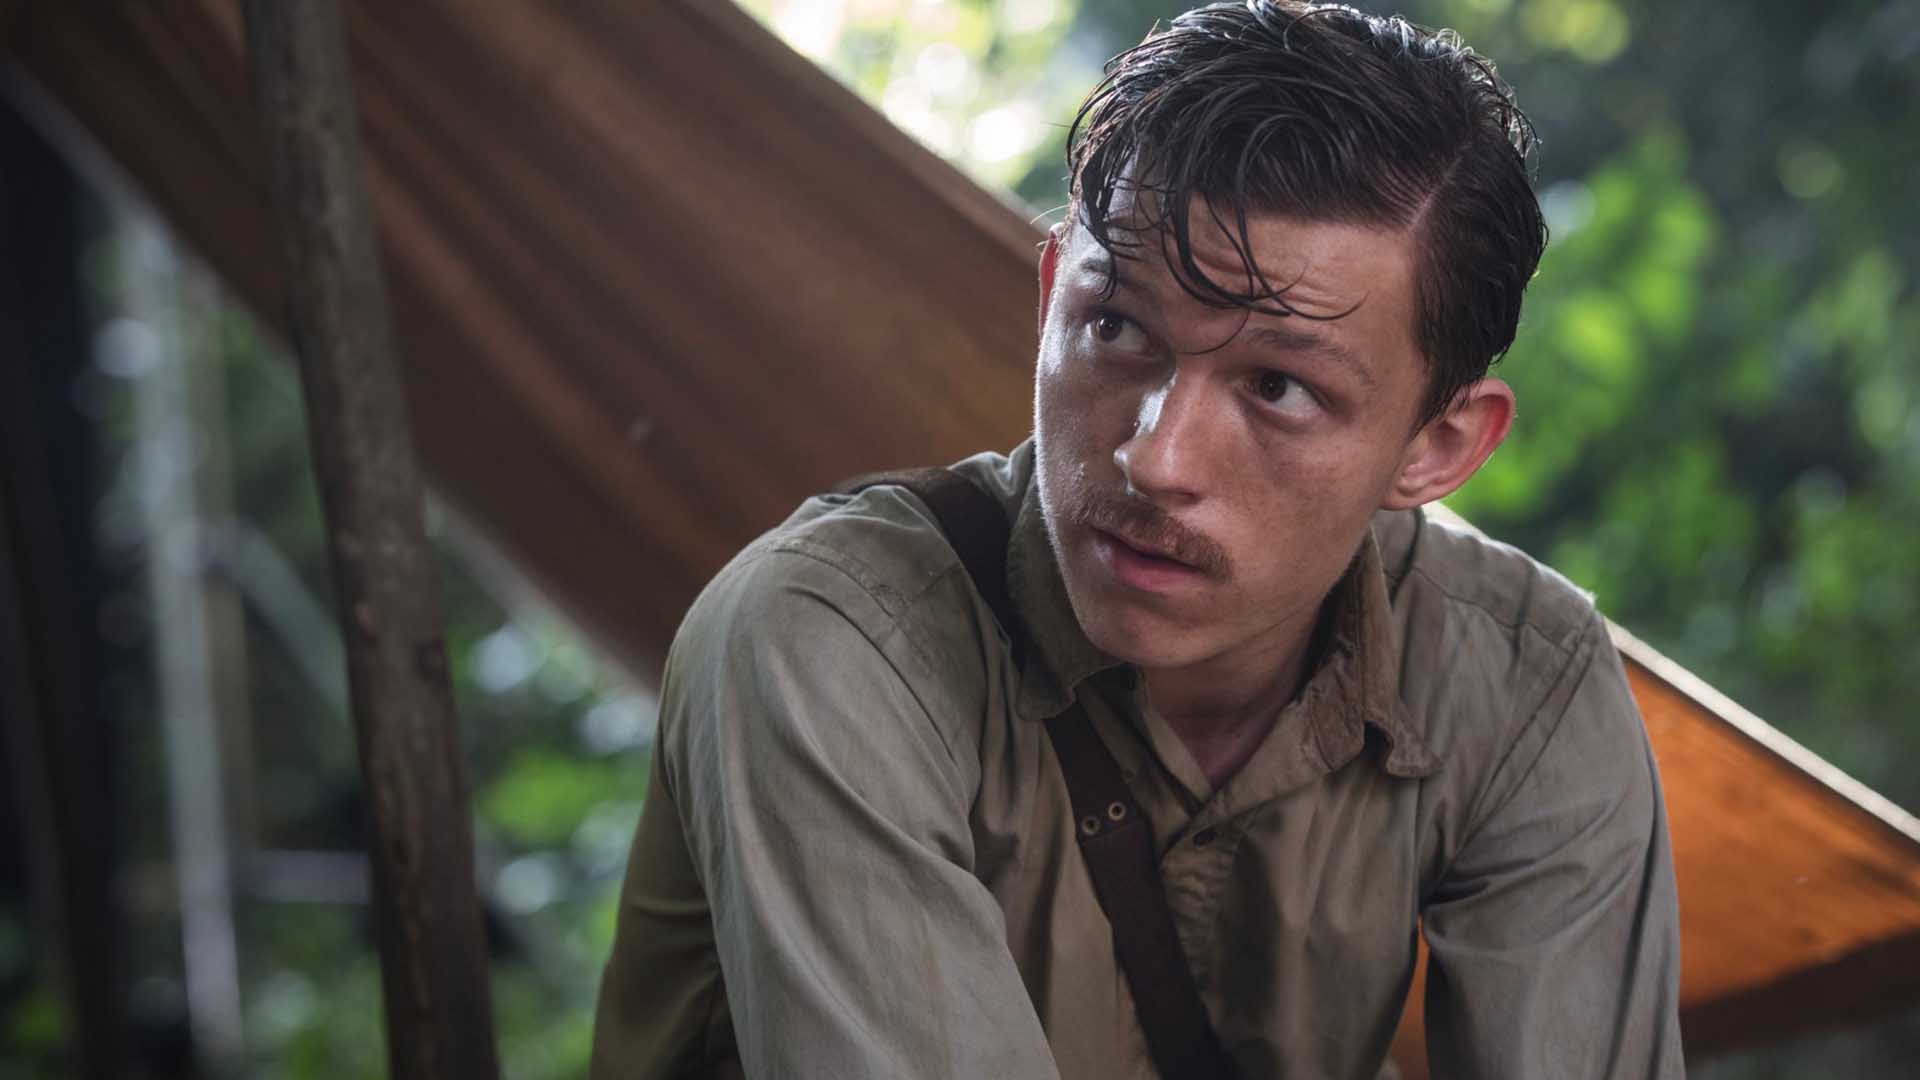 تام هالند در فیلم The Lost City of Z در جنگل نشسته است